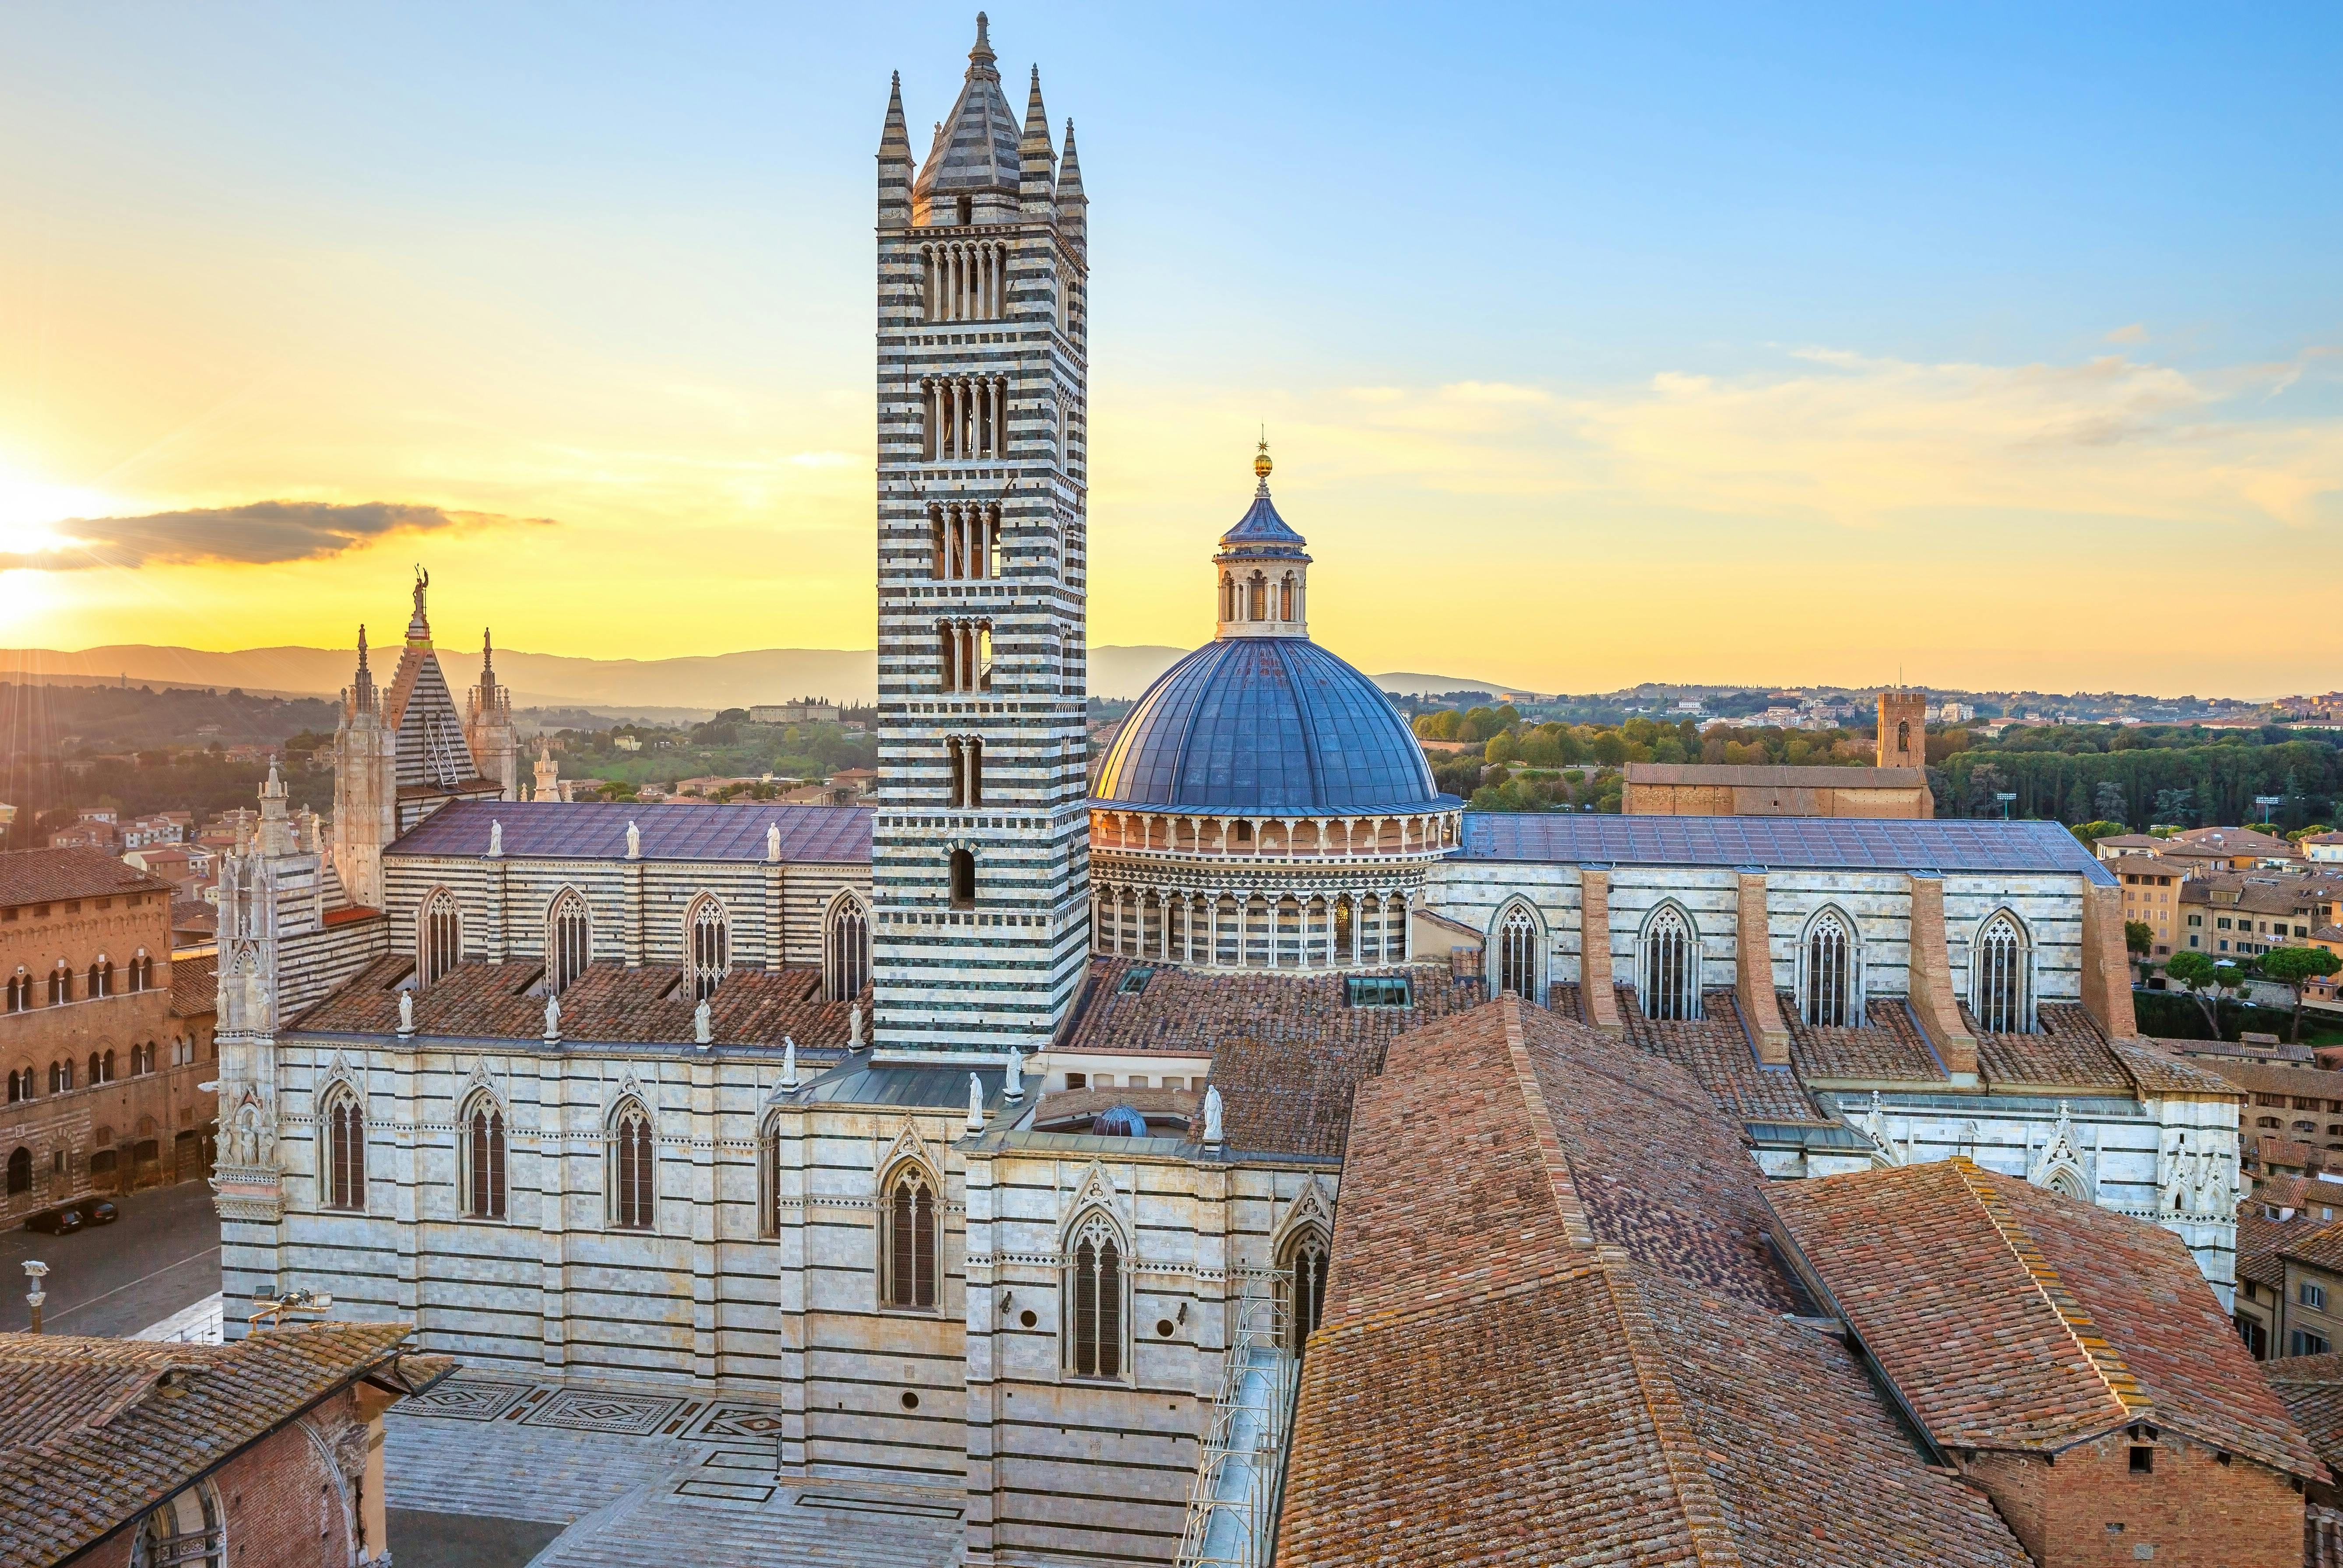 Viagem de um dia por Pisa, San Gimignano, Siena e Chianti com almoço